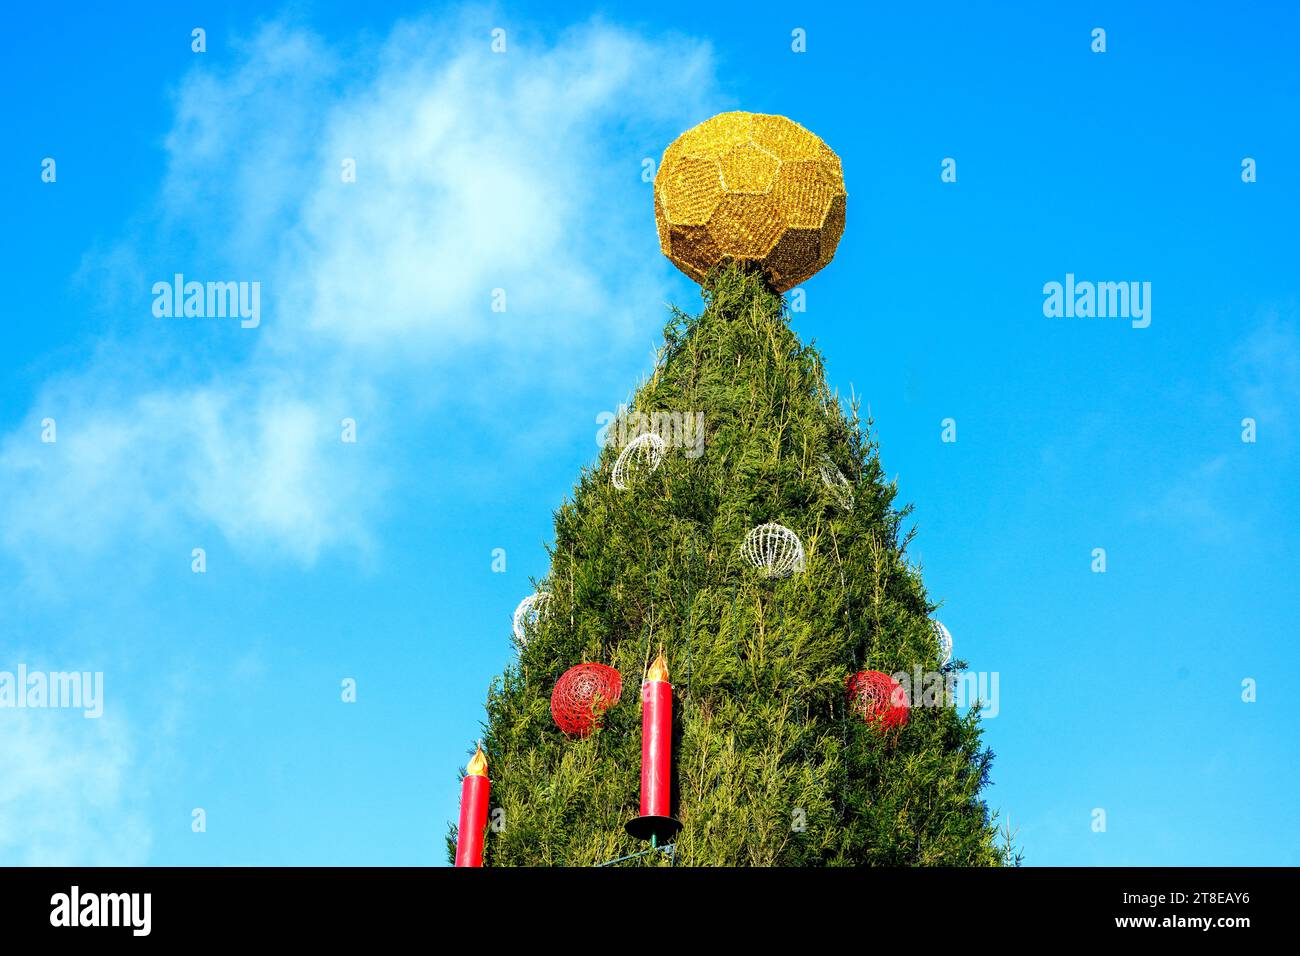 Dortmund, 20. November 2023: Auf dem Dortmunder Weihnachtsmarkt krönt ein goldener Ball den größten Weihnachtsbaum der Welt. Der Baum ist 45 Meter hoch, besteht aus 1.700 roten Fichten aus dem Sauerland und ist mit 48.000 LED-Leuchten gehängt. Der Ball auf der Oberseite ähnelt einem Fußball und wird deshalb als geschmacklos und weihnachtlich unpassend kritisiert --- eine goldene Kugel krönt den weltweit größten Weihnachtsbaum auf dem Dortmunder Weihnachtsmarkt. Der Baum ist 45 Meter hoch, besteht aus 1700 Rotfichten aus dem Sauerland und ist mit 48,000 LED-Lichtern behängt. Die Kugel auf der Sp Stockfoto